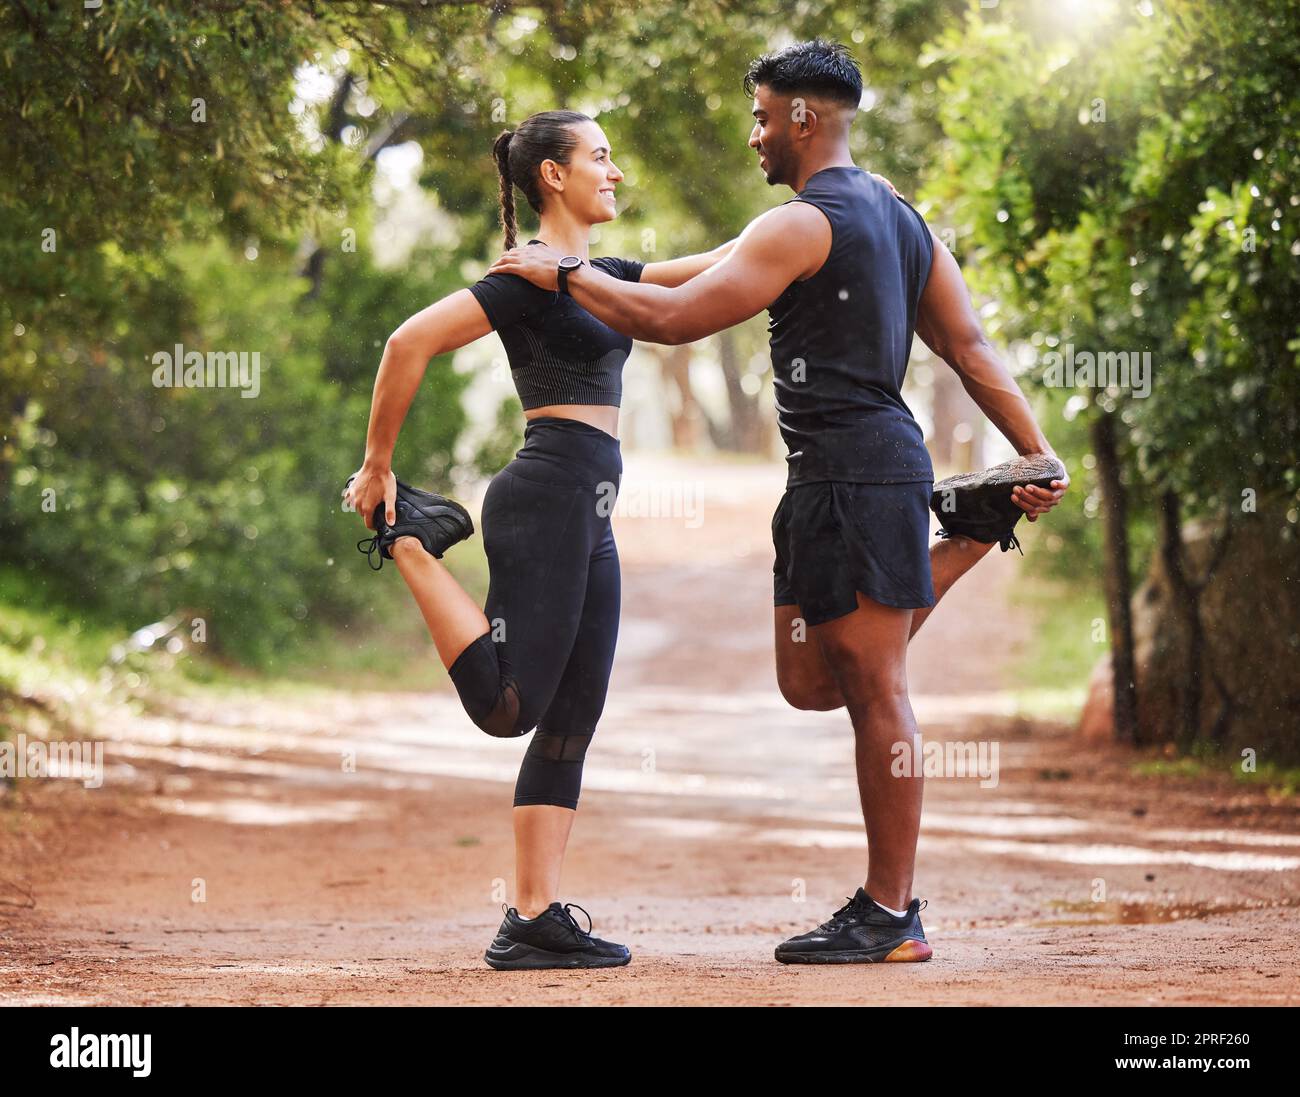 Ein junges Paar trainiert gemeinsam im Freien, dehnt sich und bereitet sich auf ein Cardio-Workout vor. Sportliche Freundin und Freund sind liebevoll, während sie trainieren und gesund bleiben Stockfoto